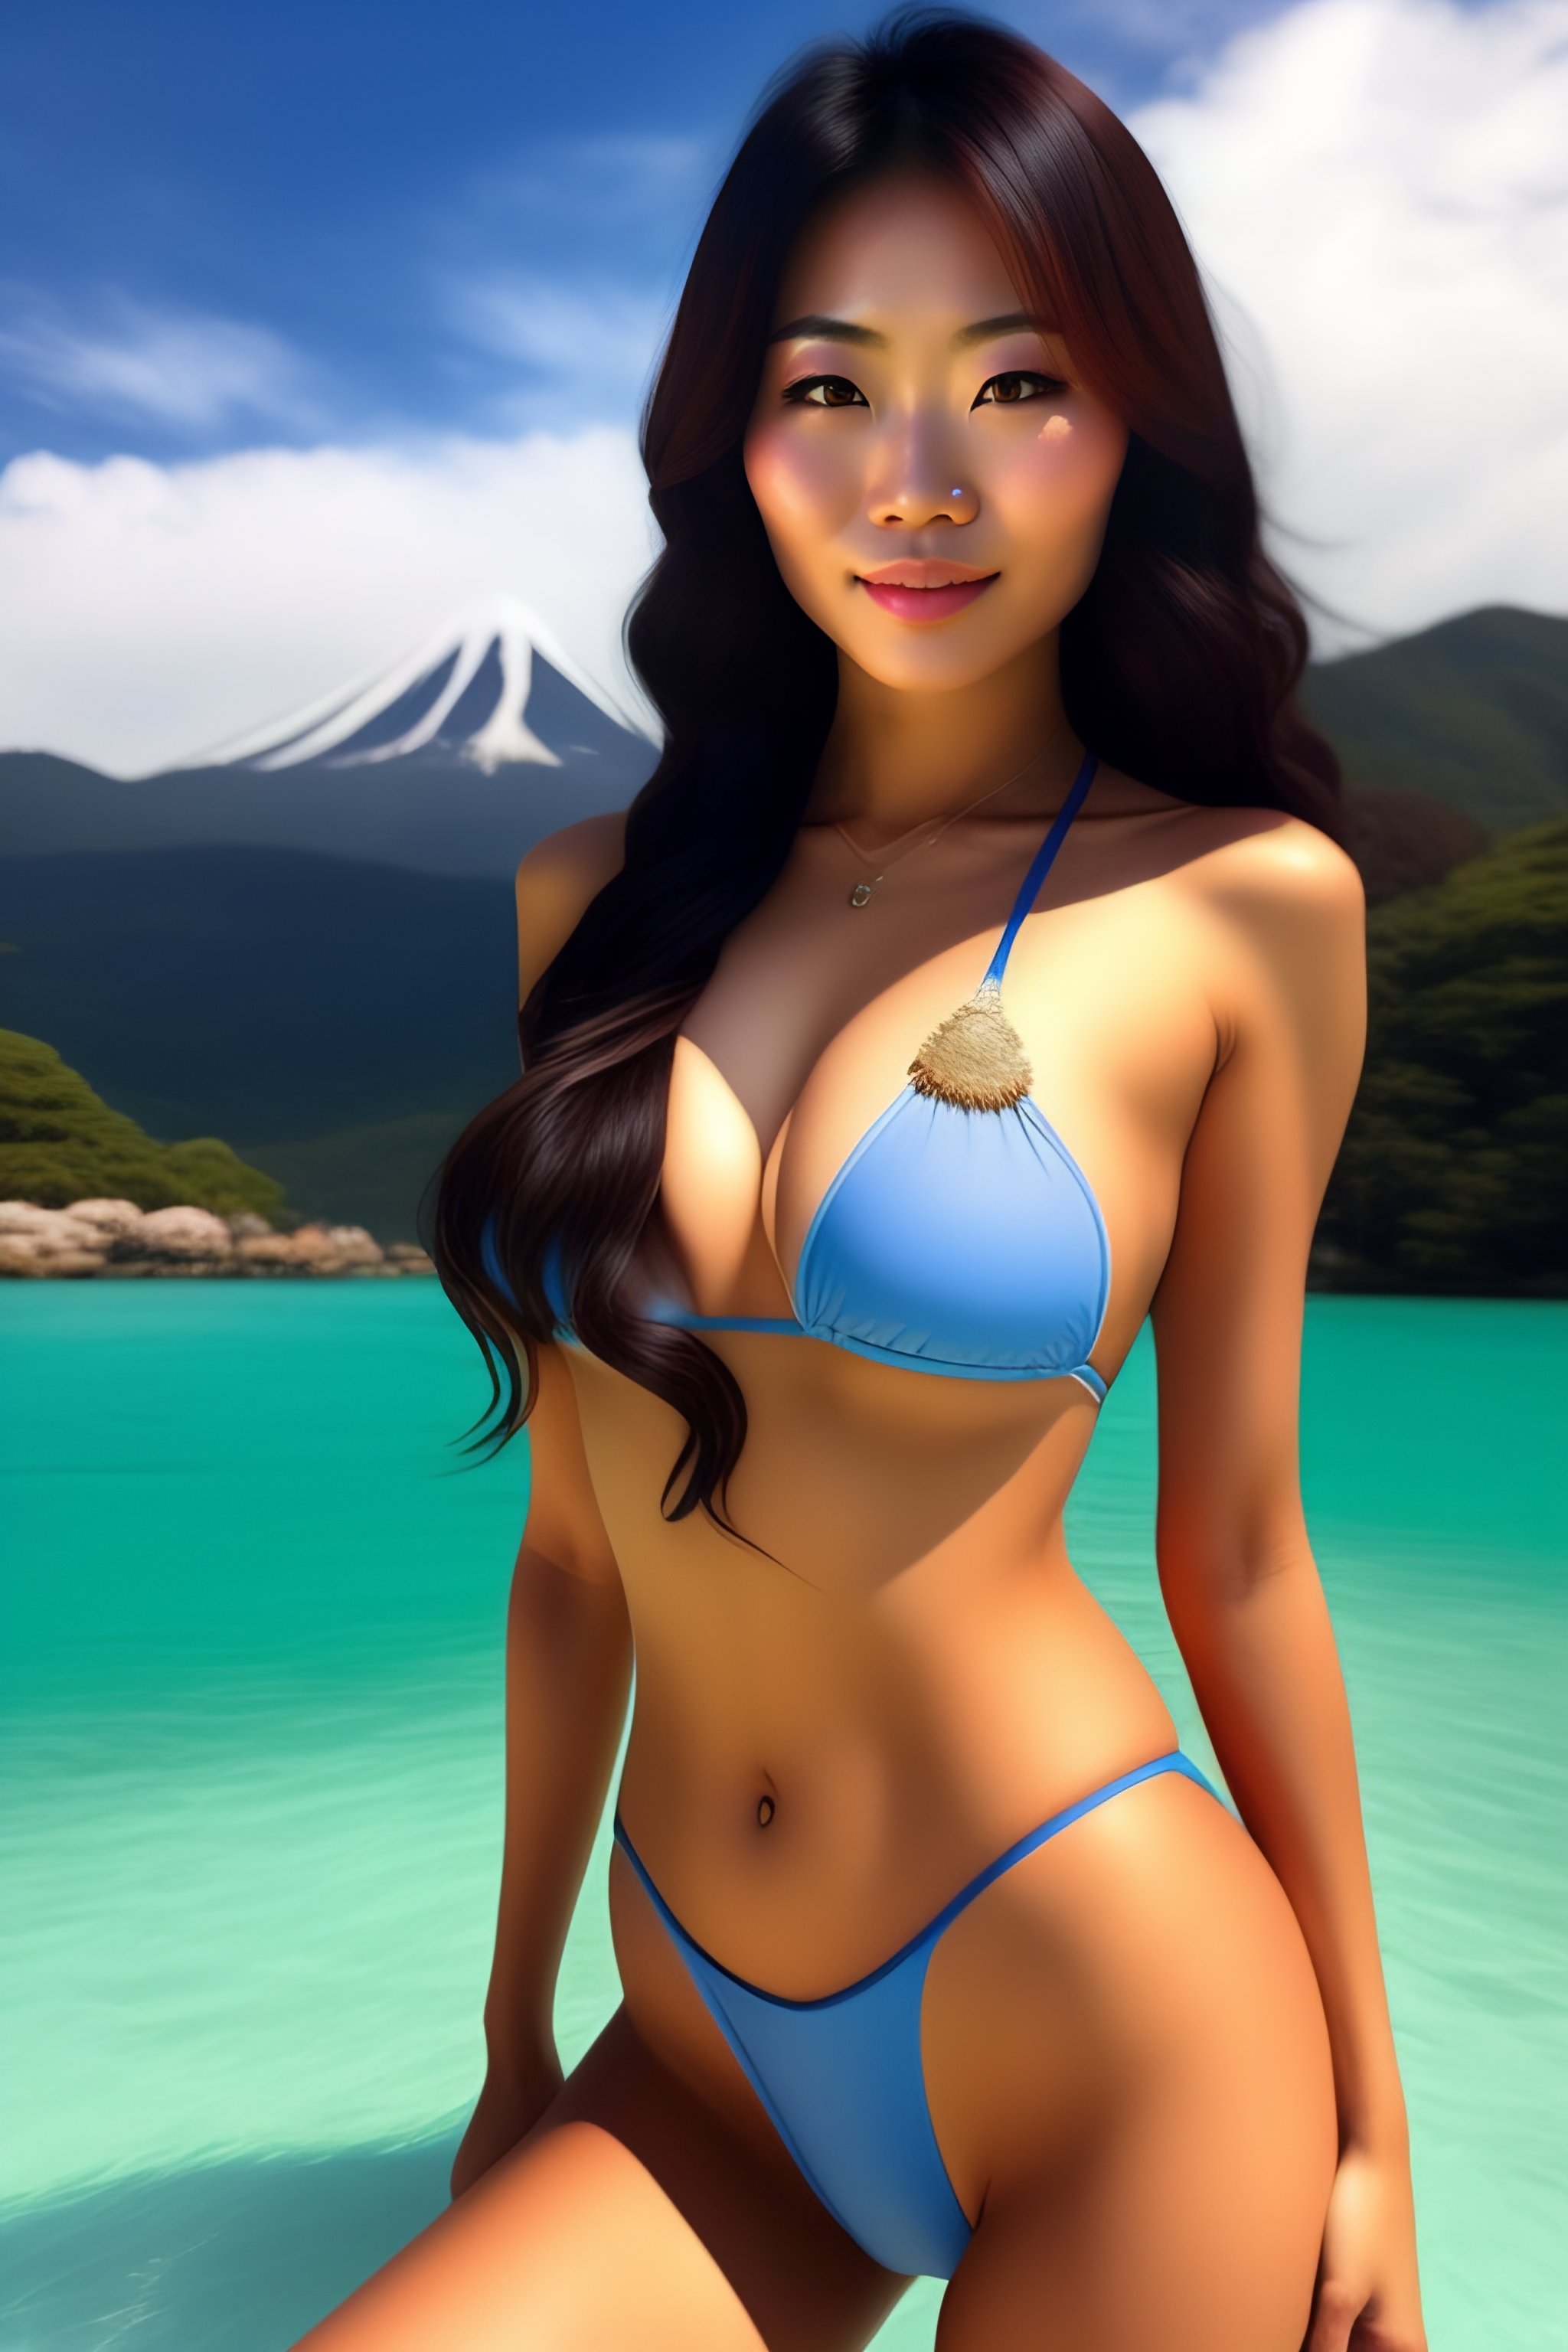 Lexica Cute Japanese Woman In A Bikini